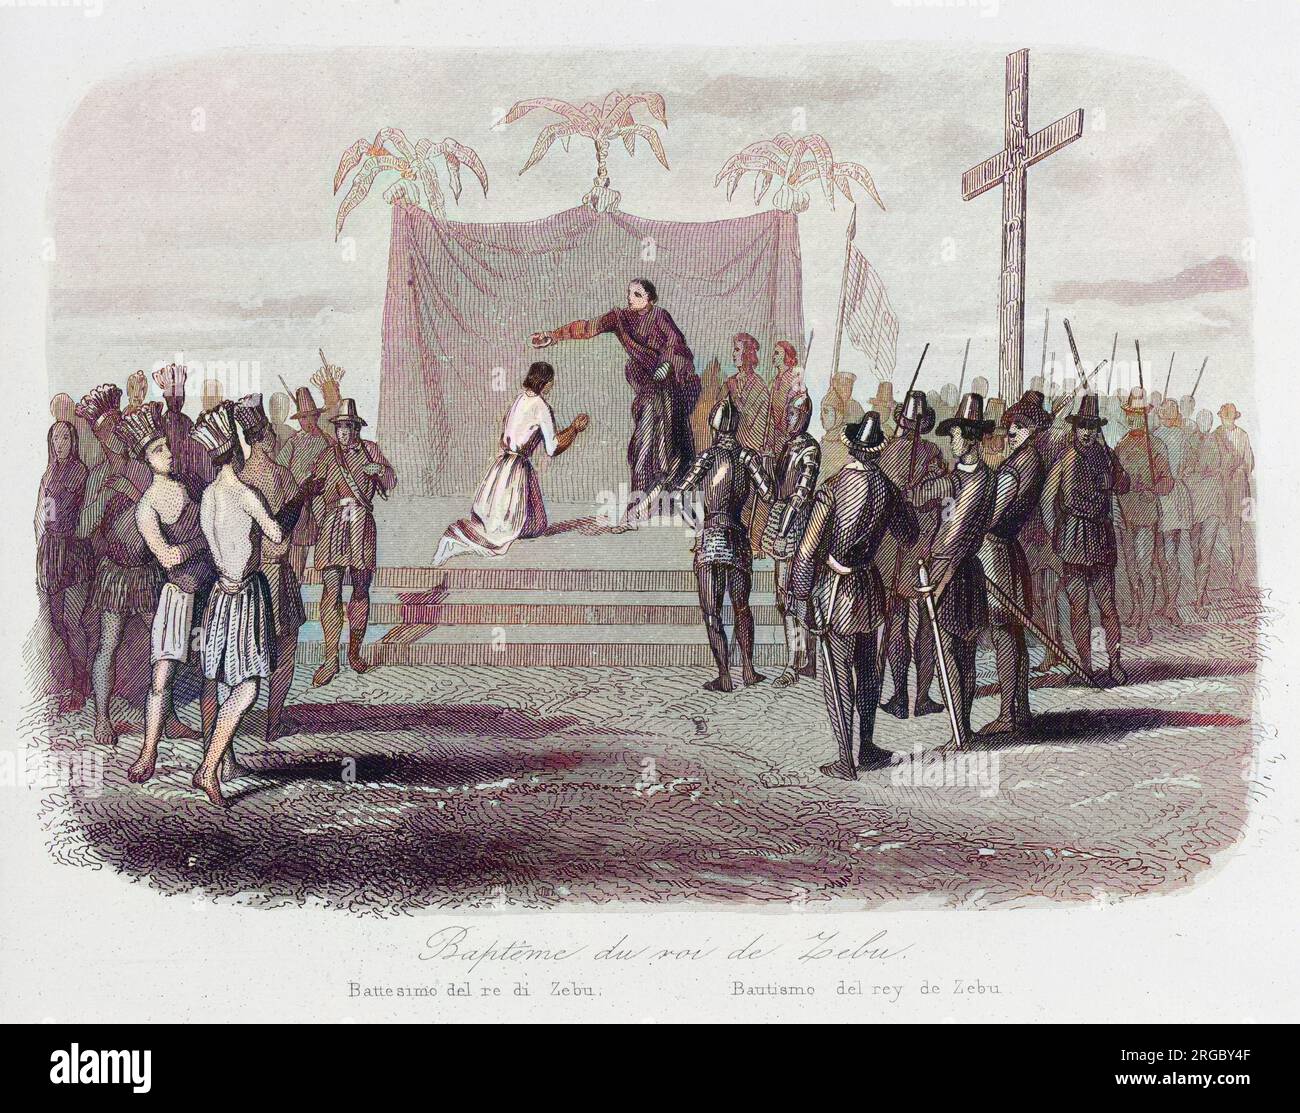 Humabon, König von Cebu auf den Philippinen, wird getauft, wenn Magelhaes (Magellan) seine Insel besucht. Stockfoto